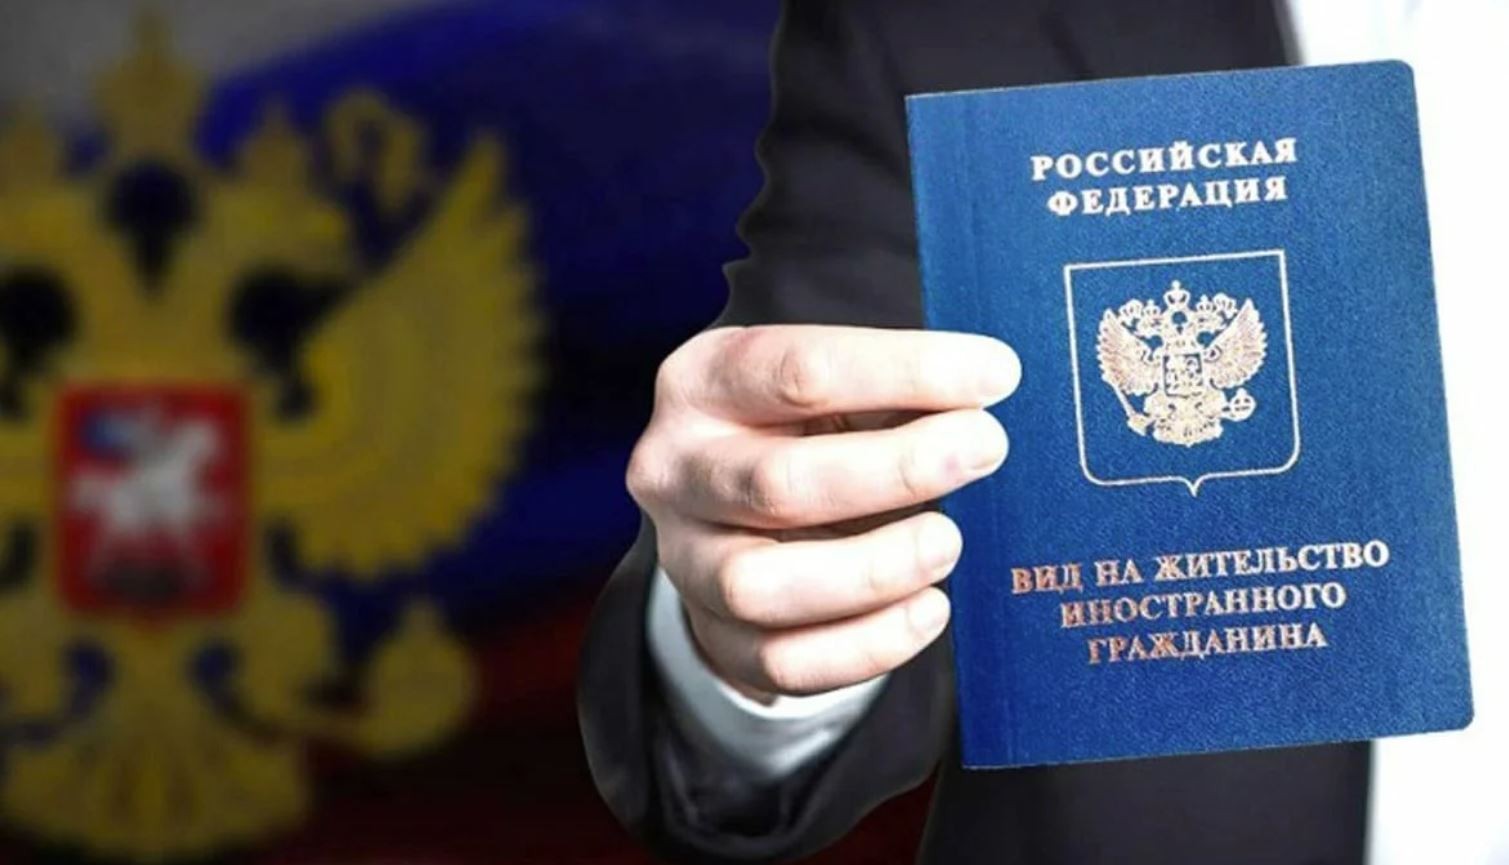 Получение ВНЖ в России гражданами иностранных государств